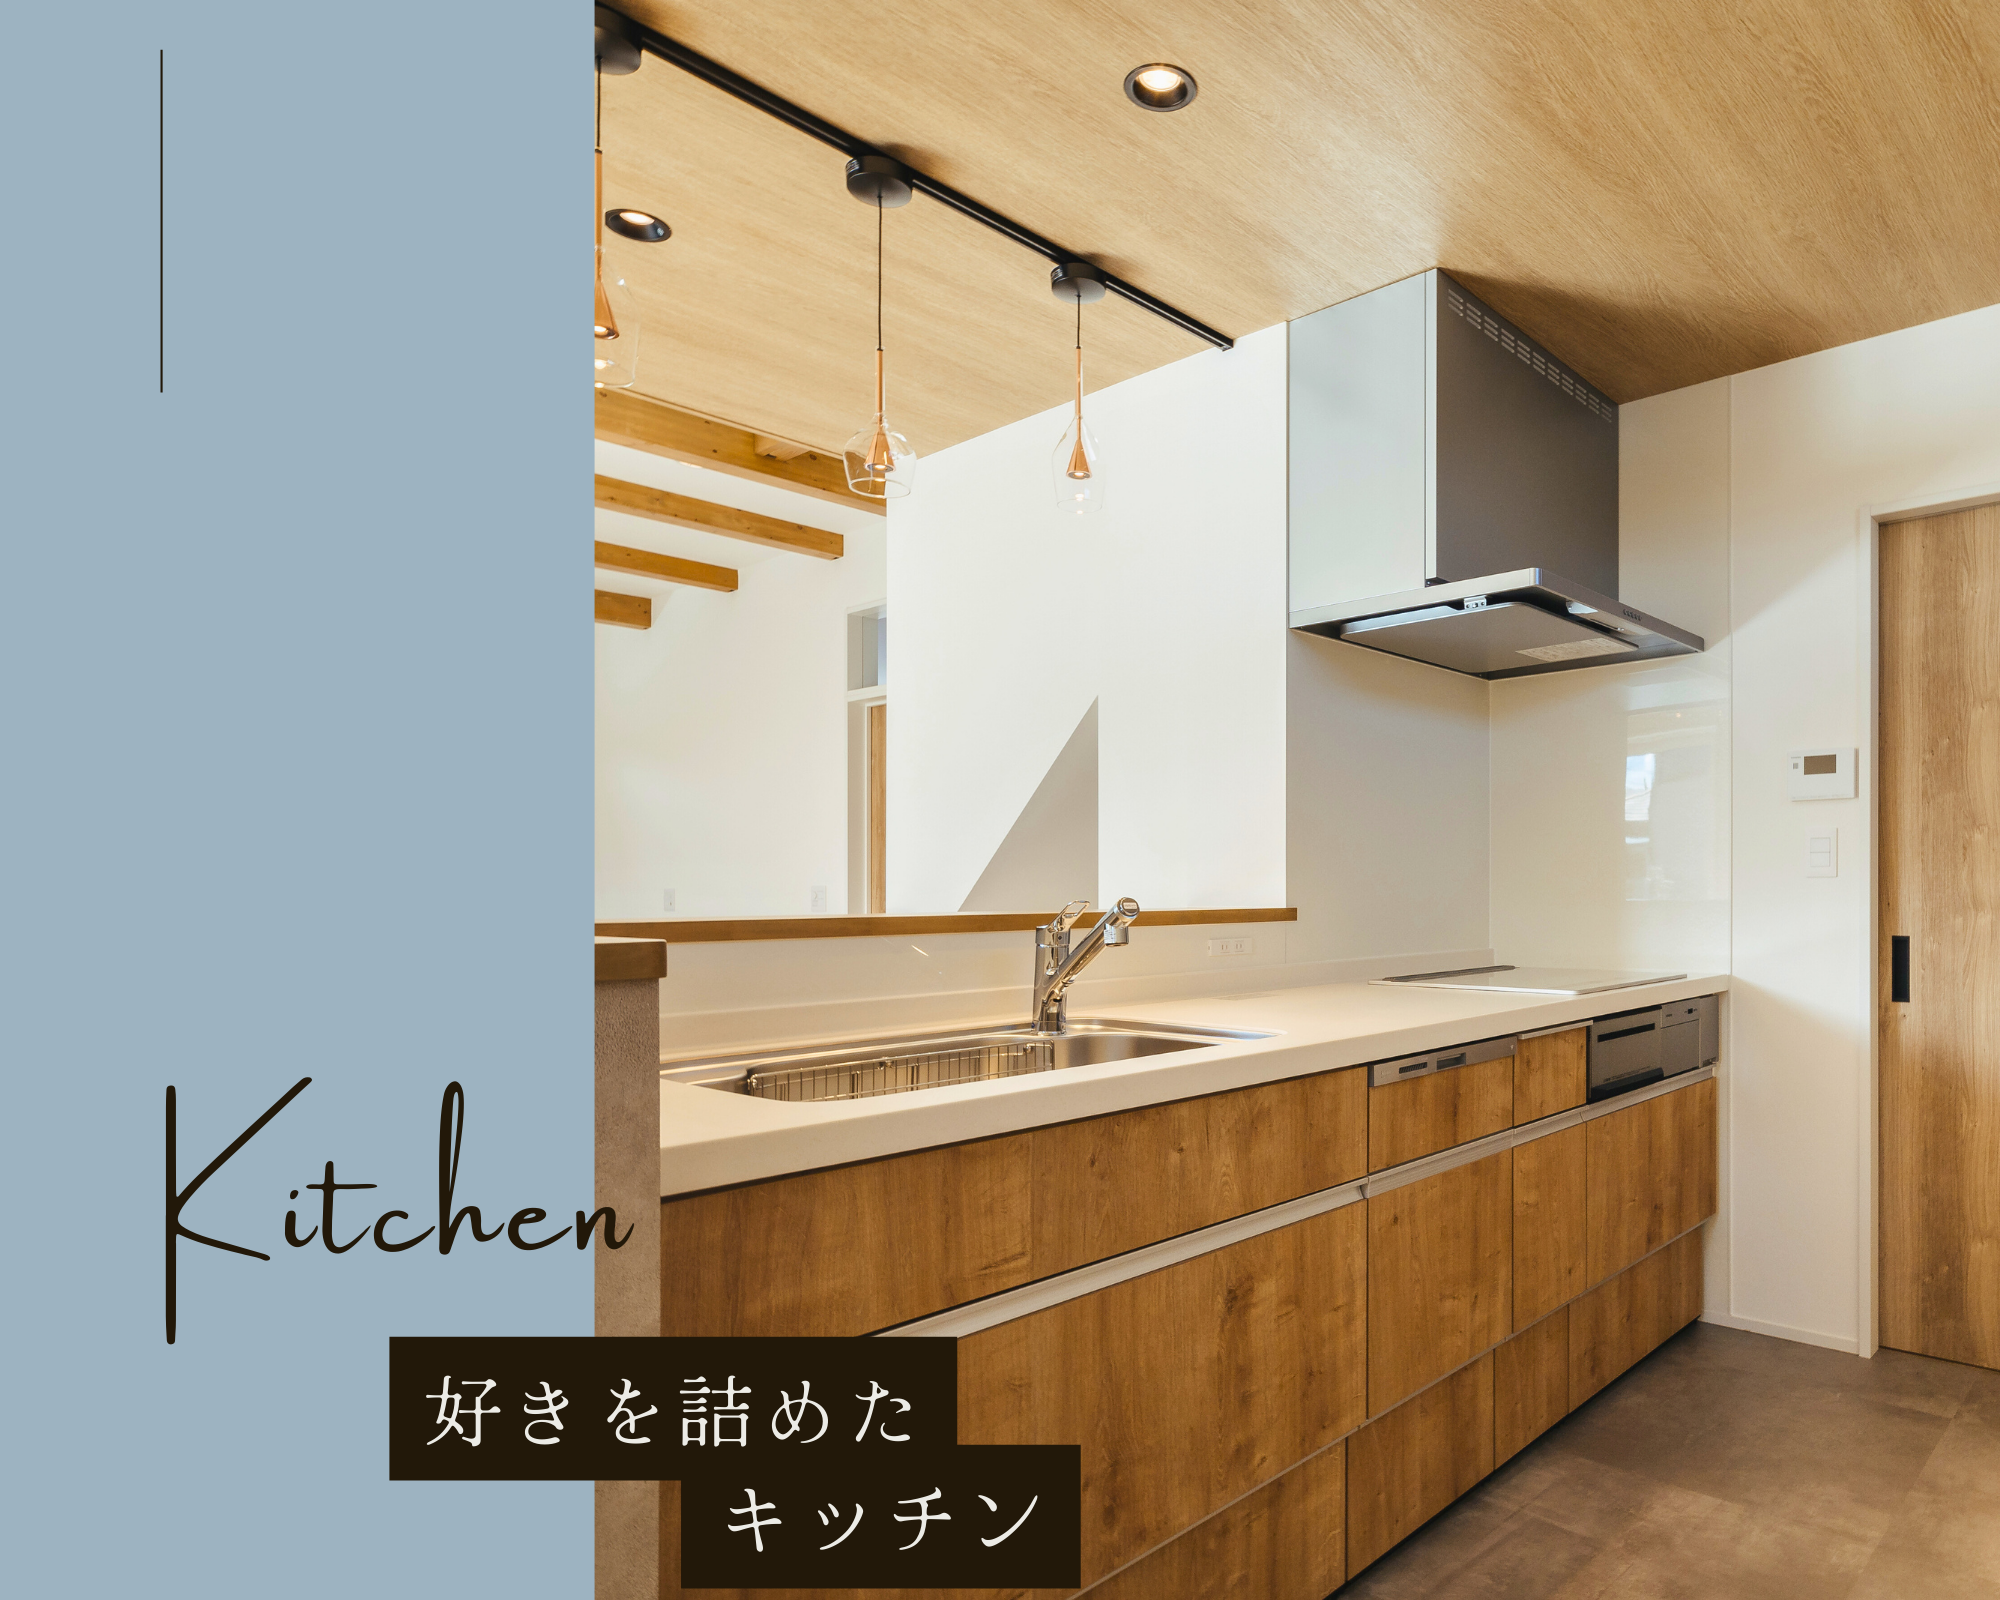 好きを詰めたキッチン~Kitchen~